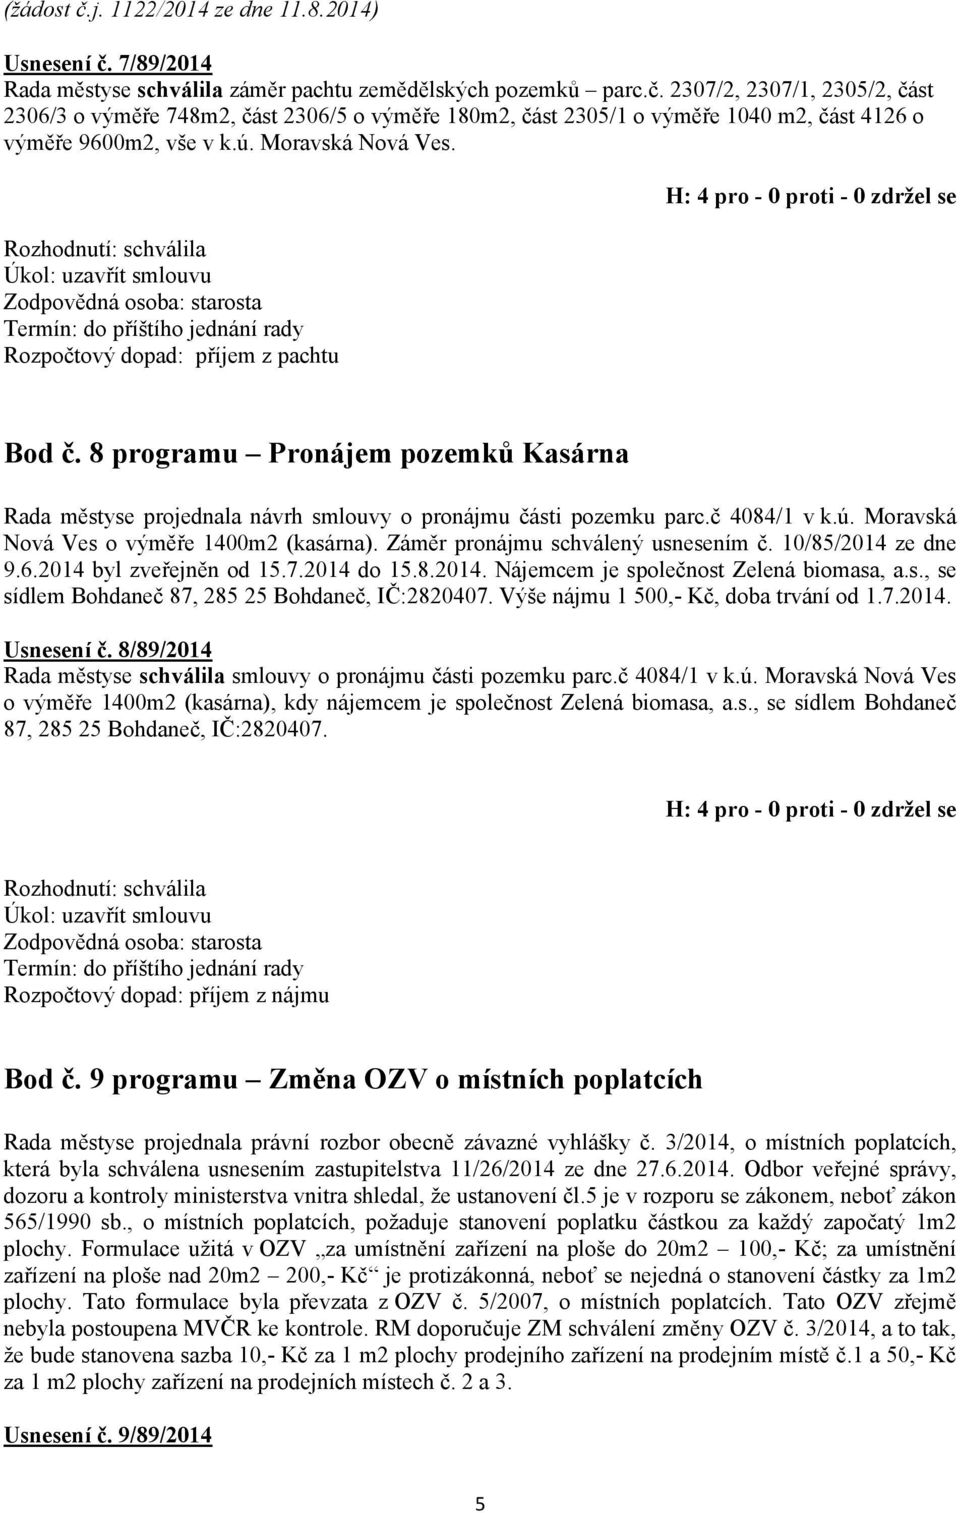 Záměr pronájmu schválený usnesením č. 10/85/2014 ze dne 9.6.2014 byl zveřejněn od 15.7.2014 do 15.8.2014. Nájemcem je společnost Zelená biomasa, a.s., se sídlem Bohdaneč 87, 285 25 Bohdaneč, IČ:2820407.